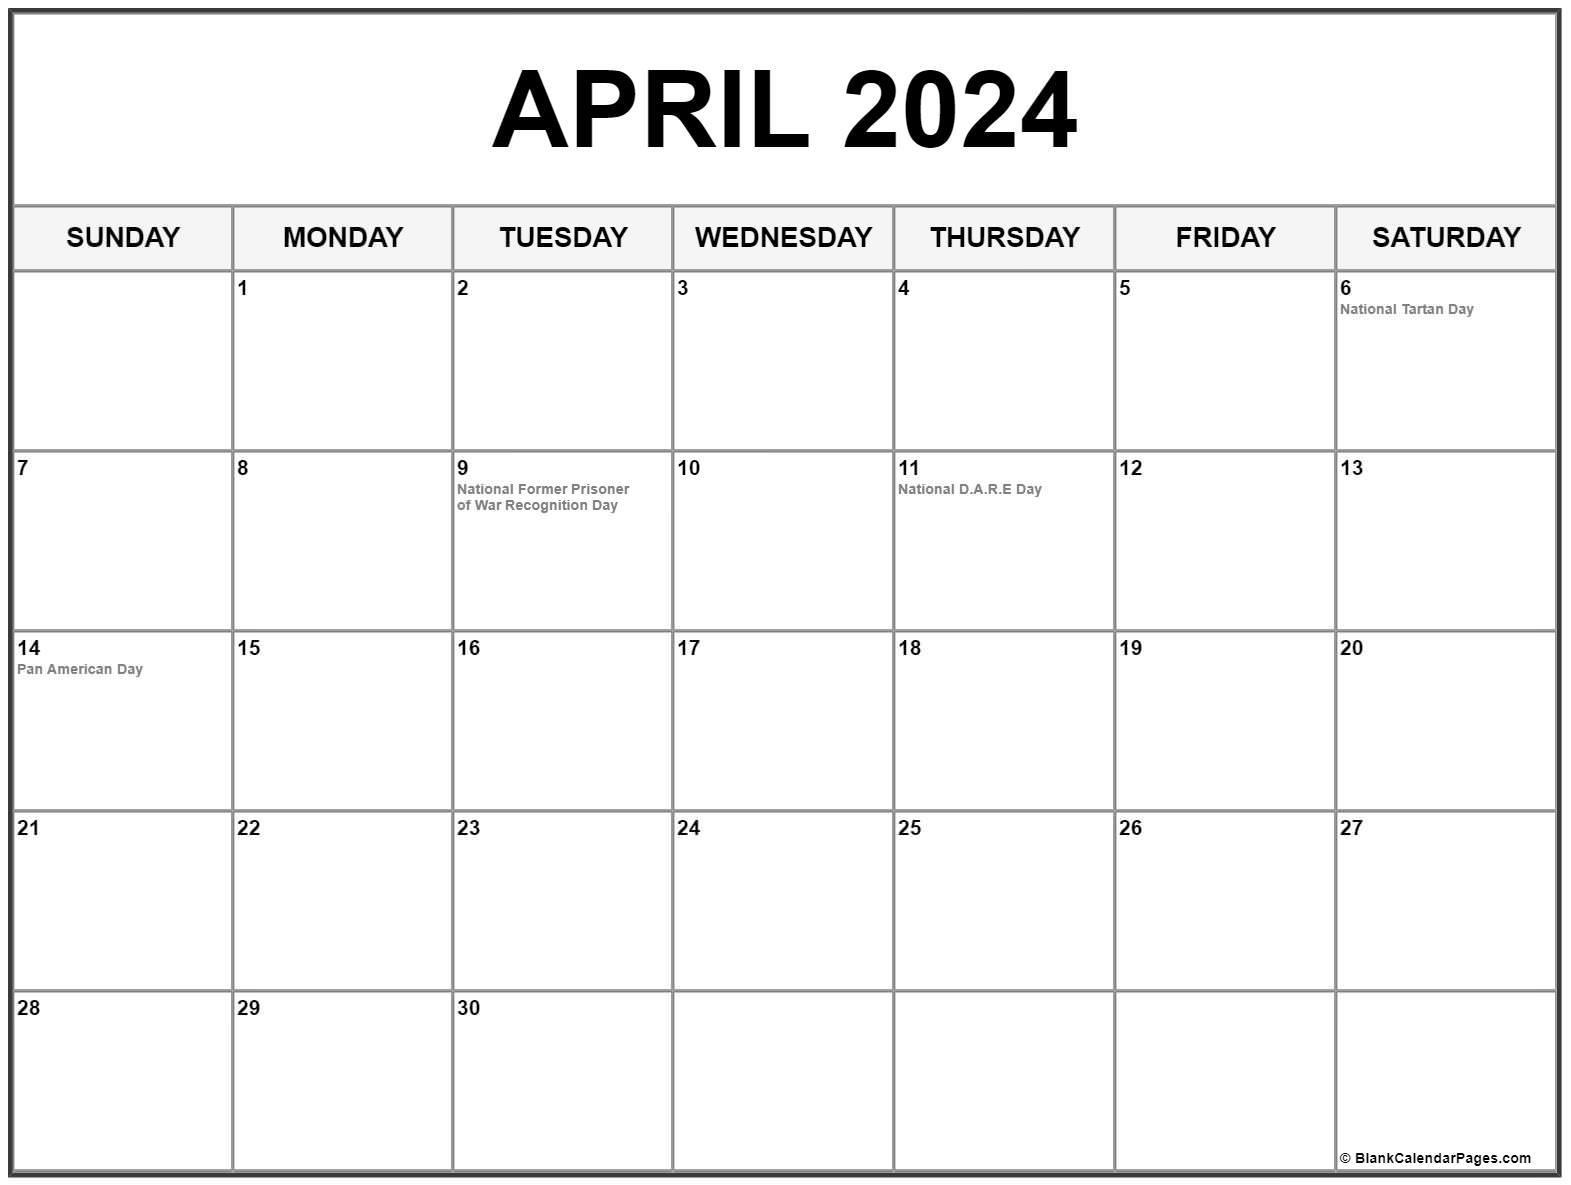 April 2024 With Holidays Calendar regarding April 2024 Calendar Holidays